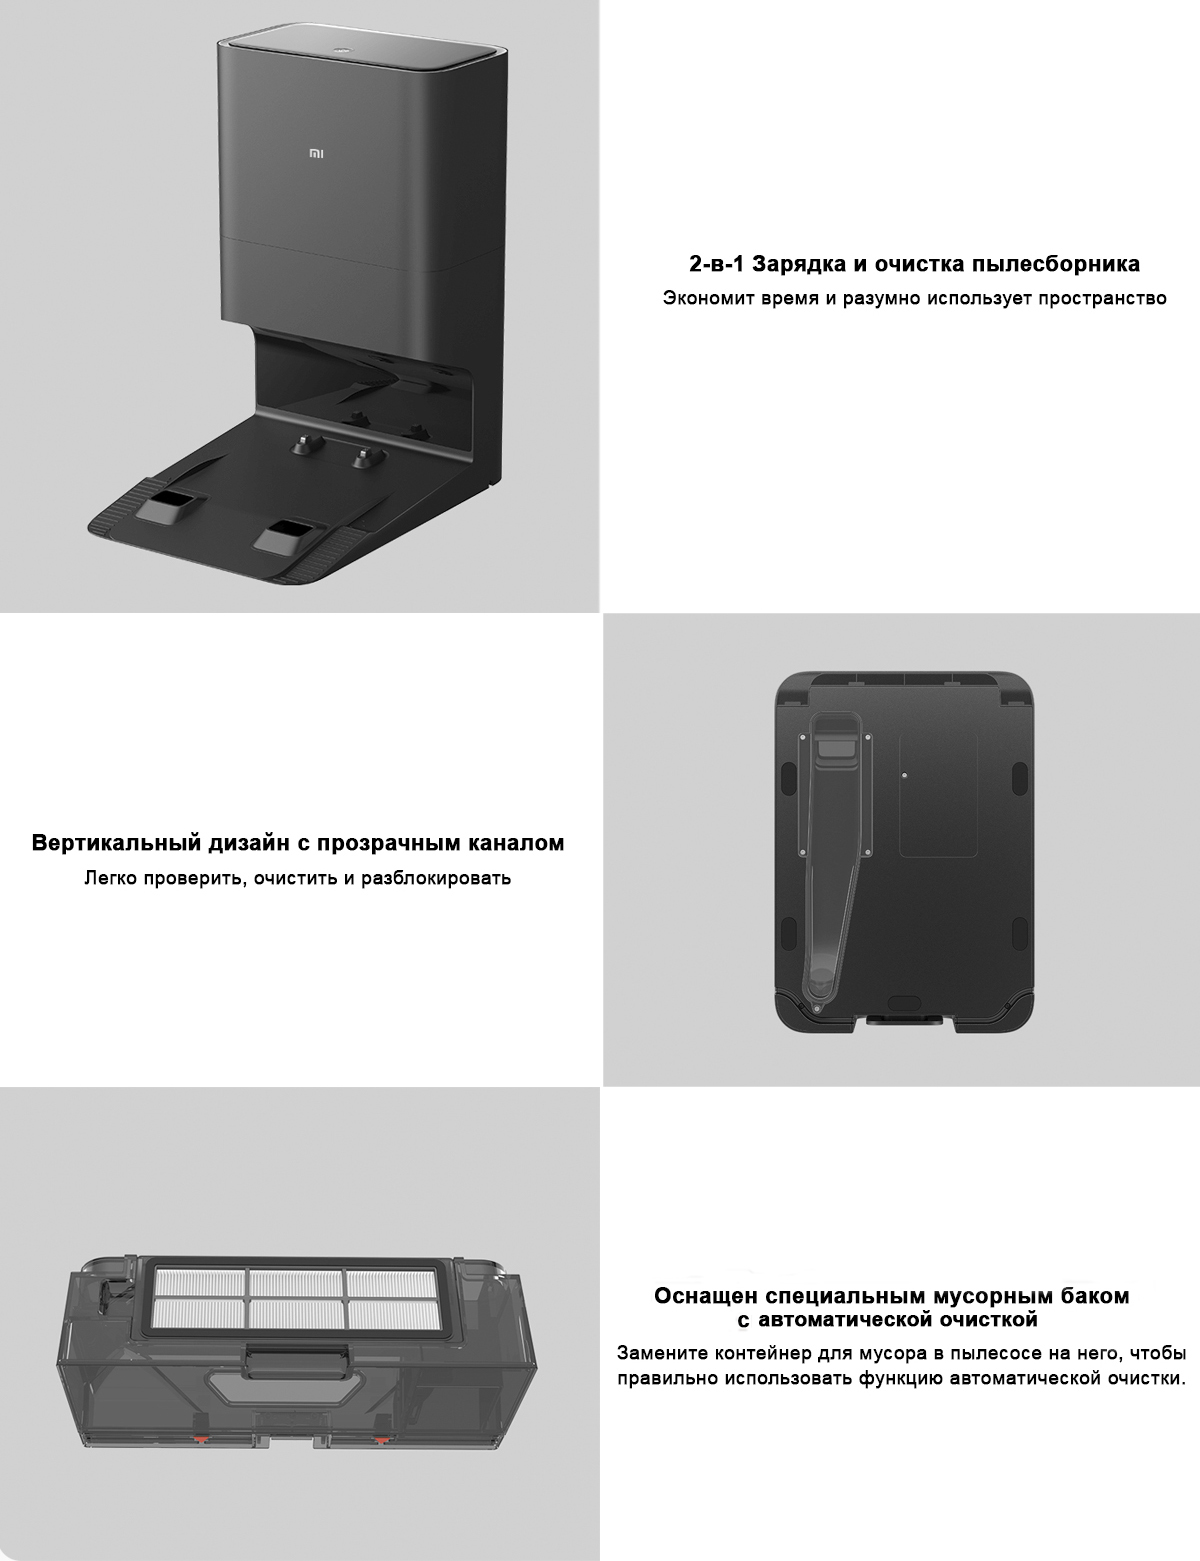 База самоочистки Auto-empty Station для робота-пылесоса Xiaomi Mi Robot Vacuum Mop 2 Ultra